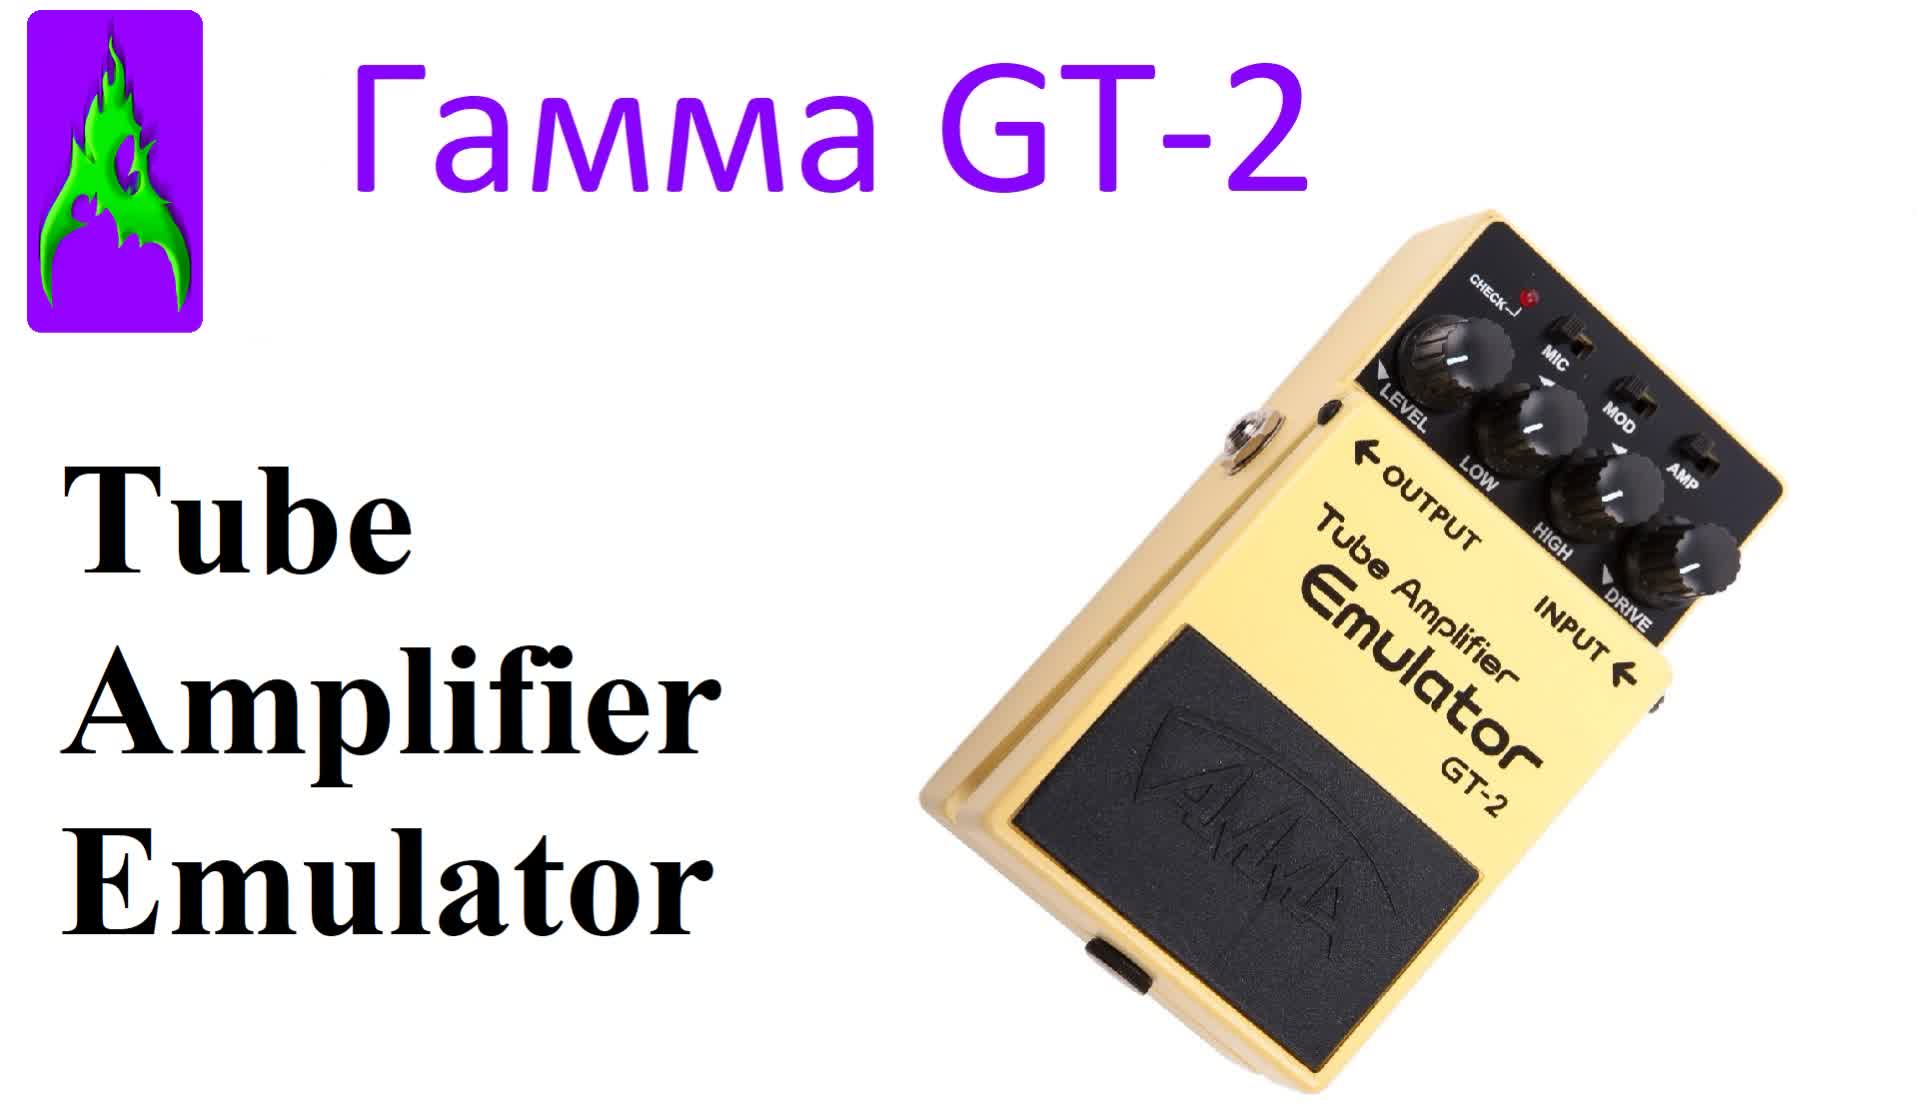 Педаль Гамма (Ерасов) Tube Amplifier Emulator GT-2 обзор